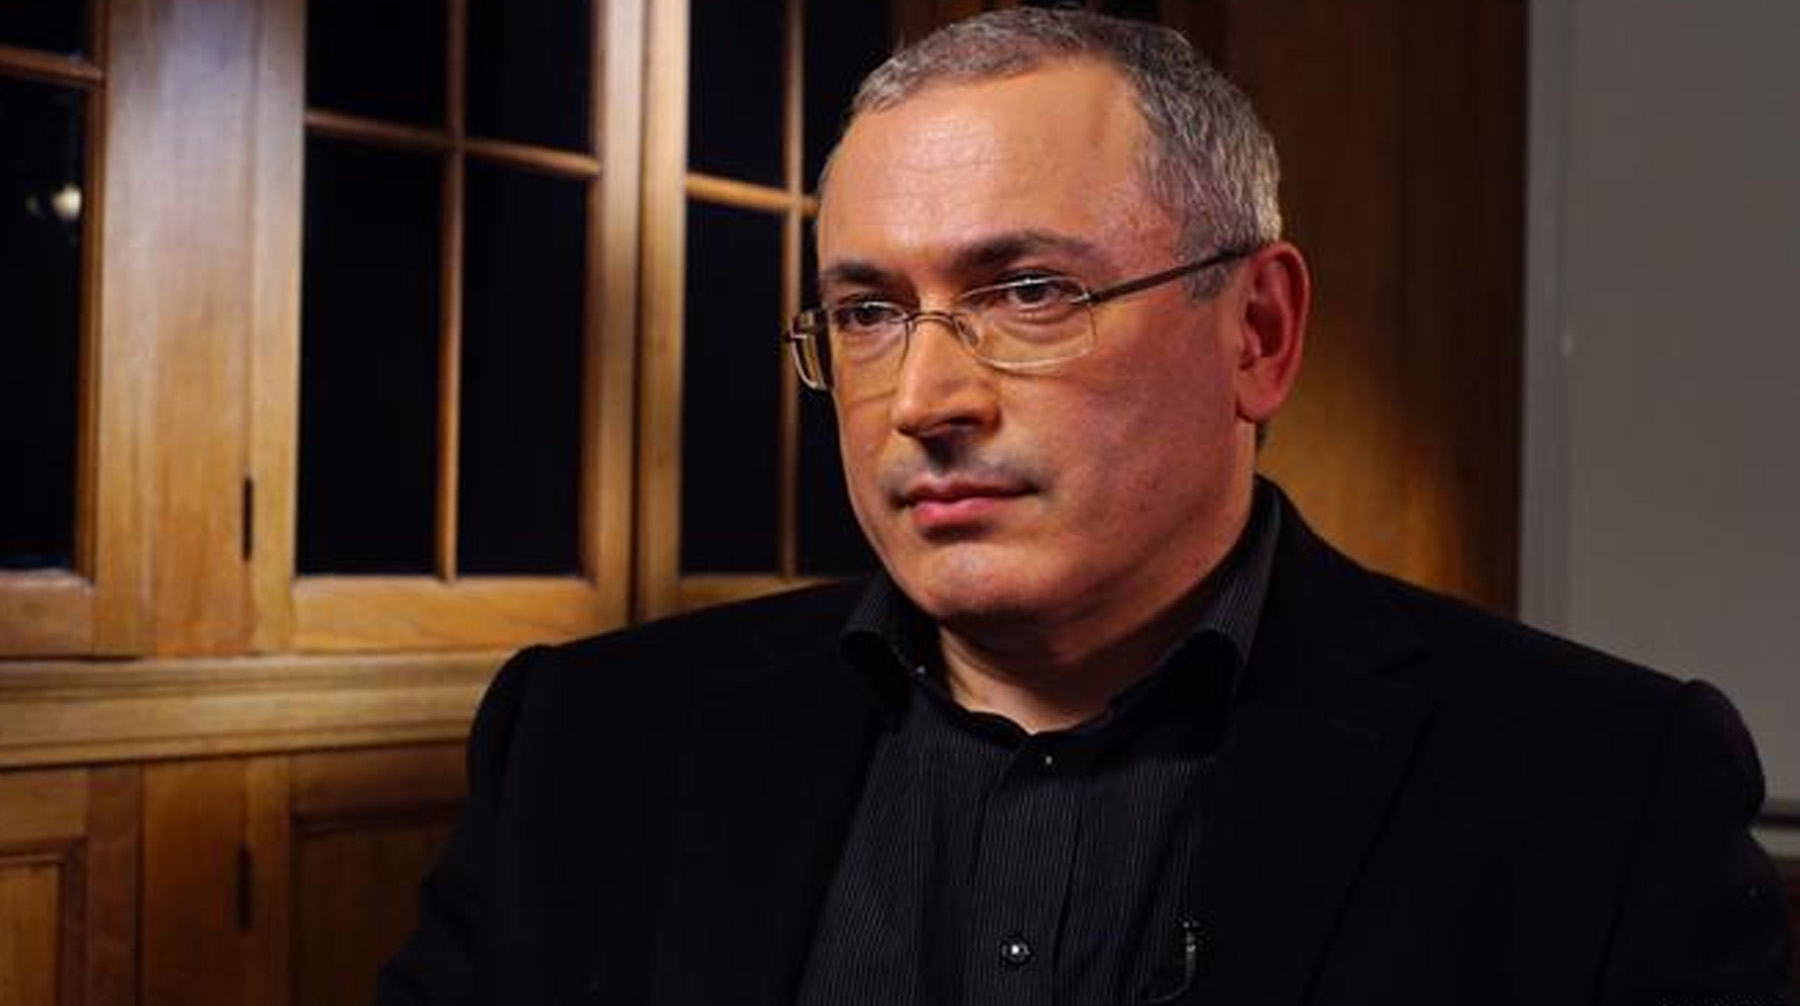 Организация, связанная с Михаилом Ходорковским, хочет спасти сотрудников от уголовного преследования Михаил Ходорковский